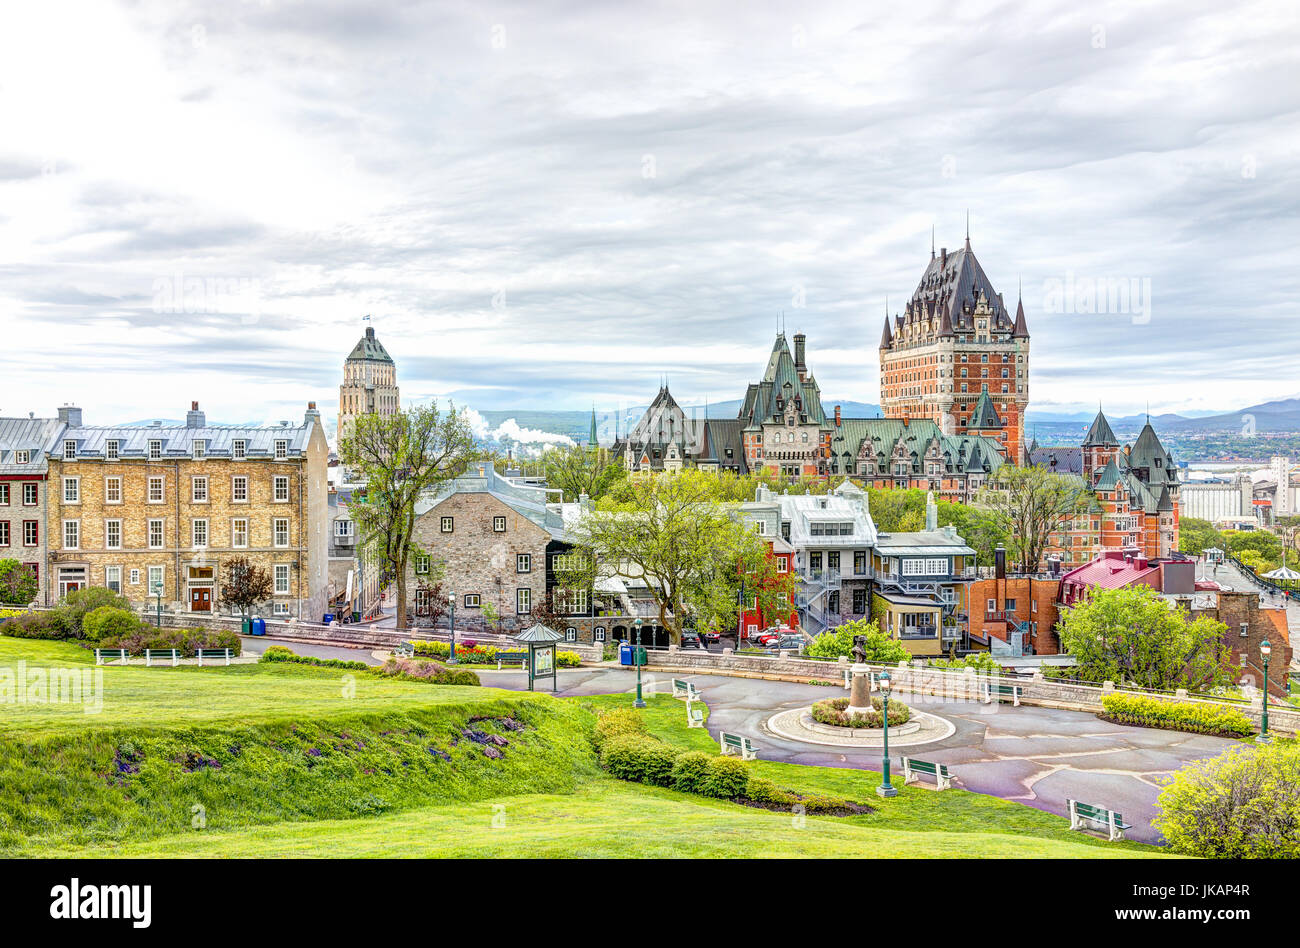 La ville de Québec, Canada - 30 mai 2017 : Cityscape ou toits de Château Frontenac, le parc et les rues de la vieille ville durant le coucher du soleil Banque D'Images